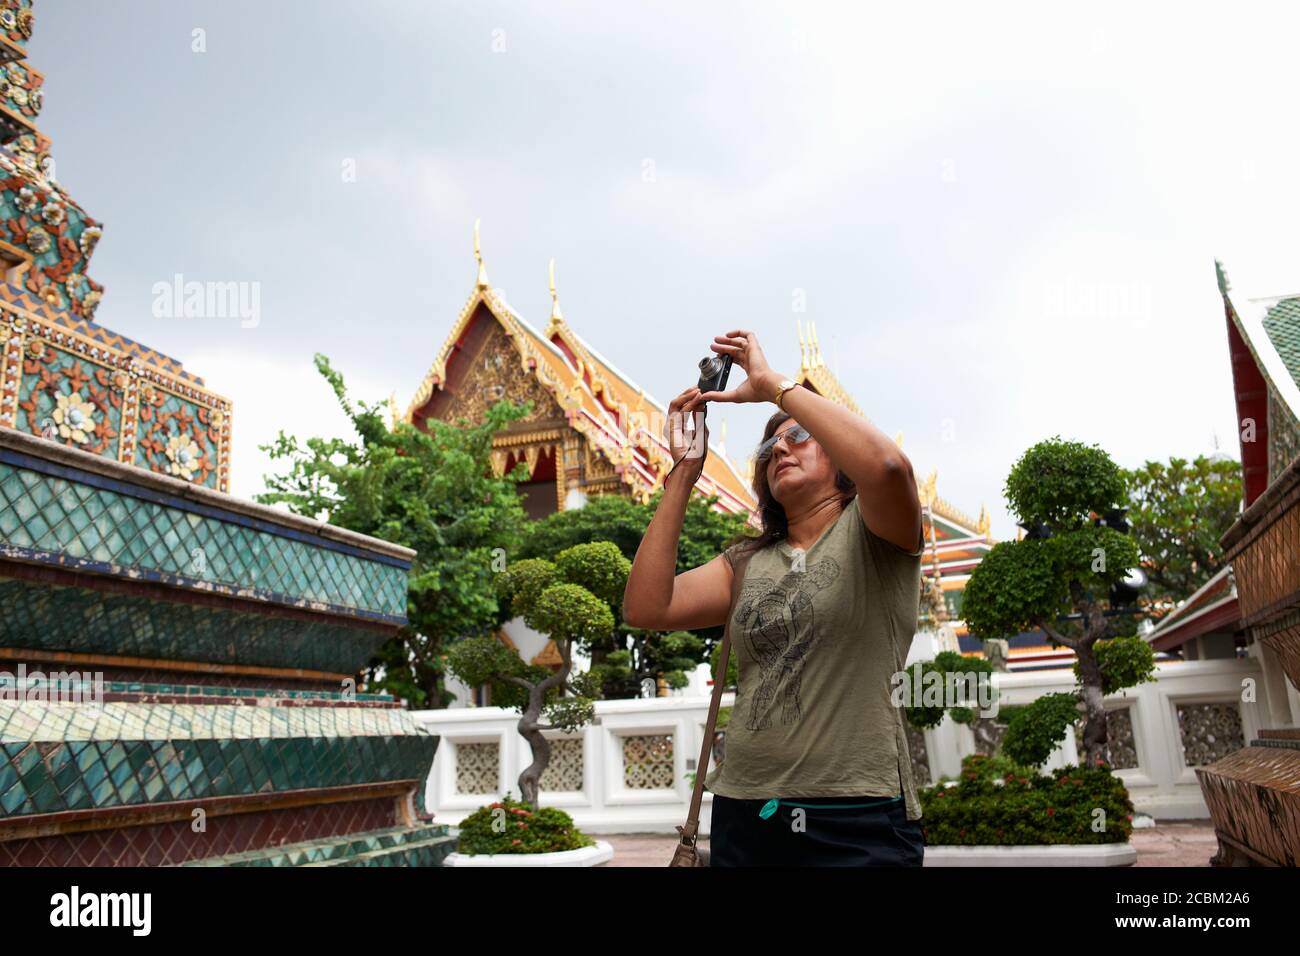 Femme prenant des photos avec un appareil photo numérique, Bangkok, Krung Thep, Thaïlande, Asie Banque D'Images